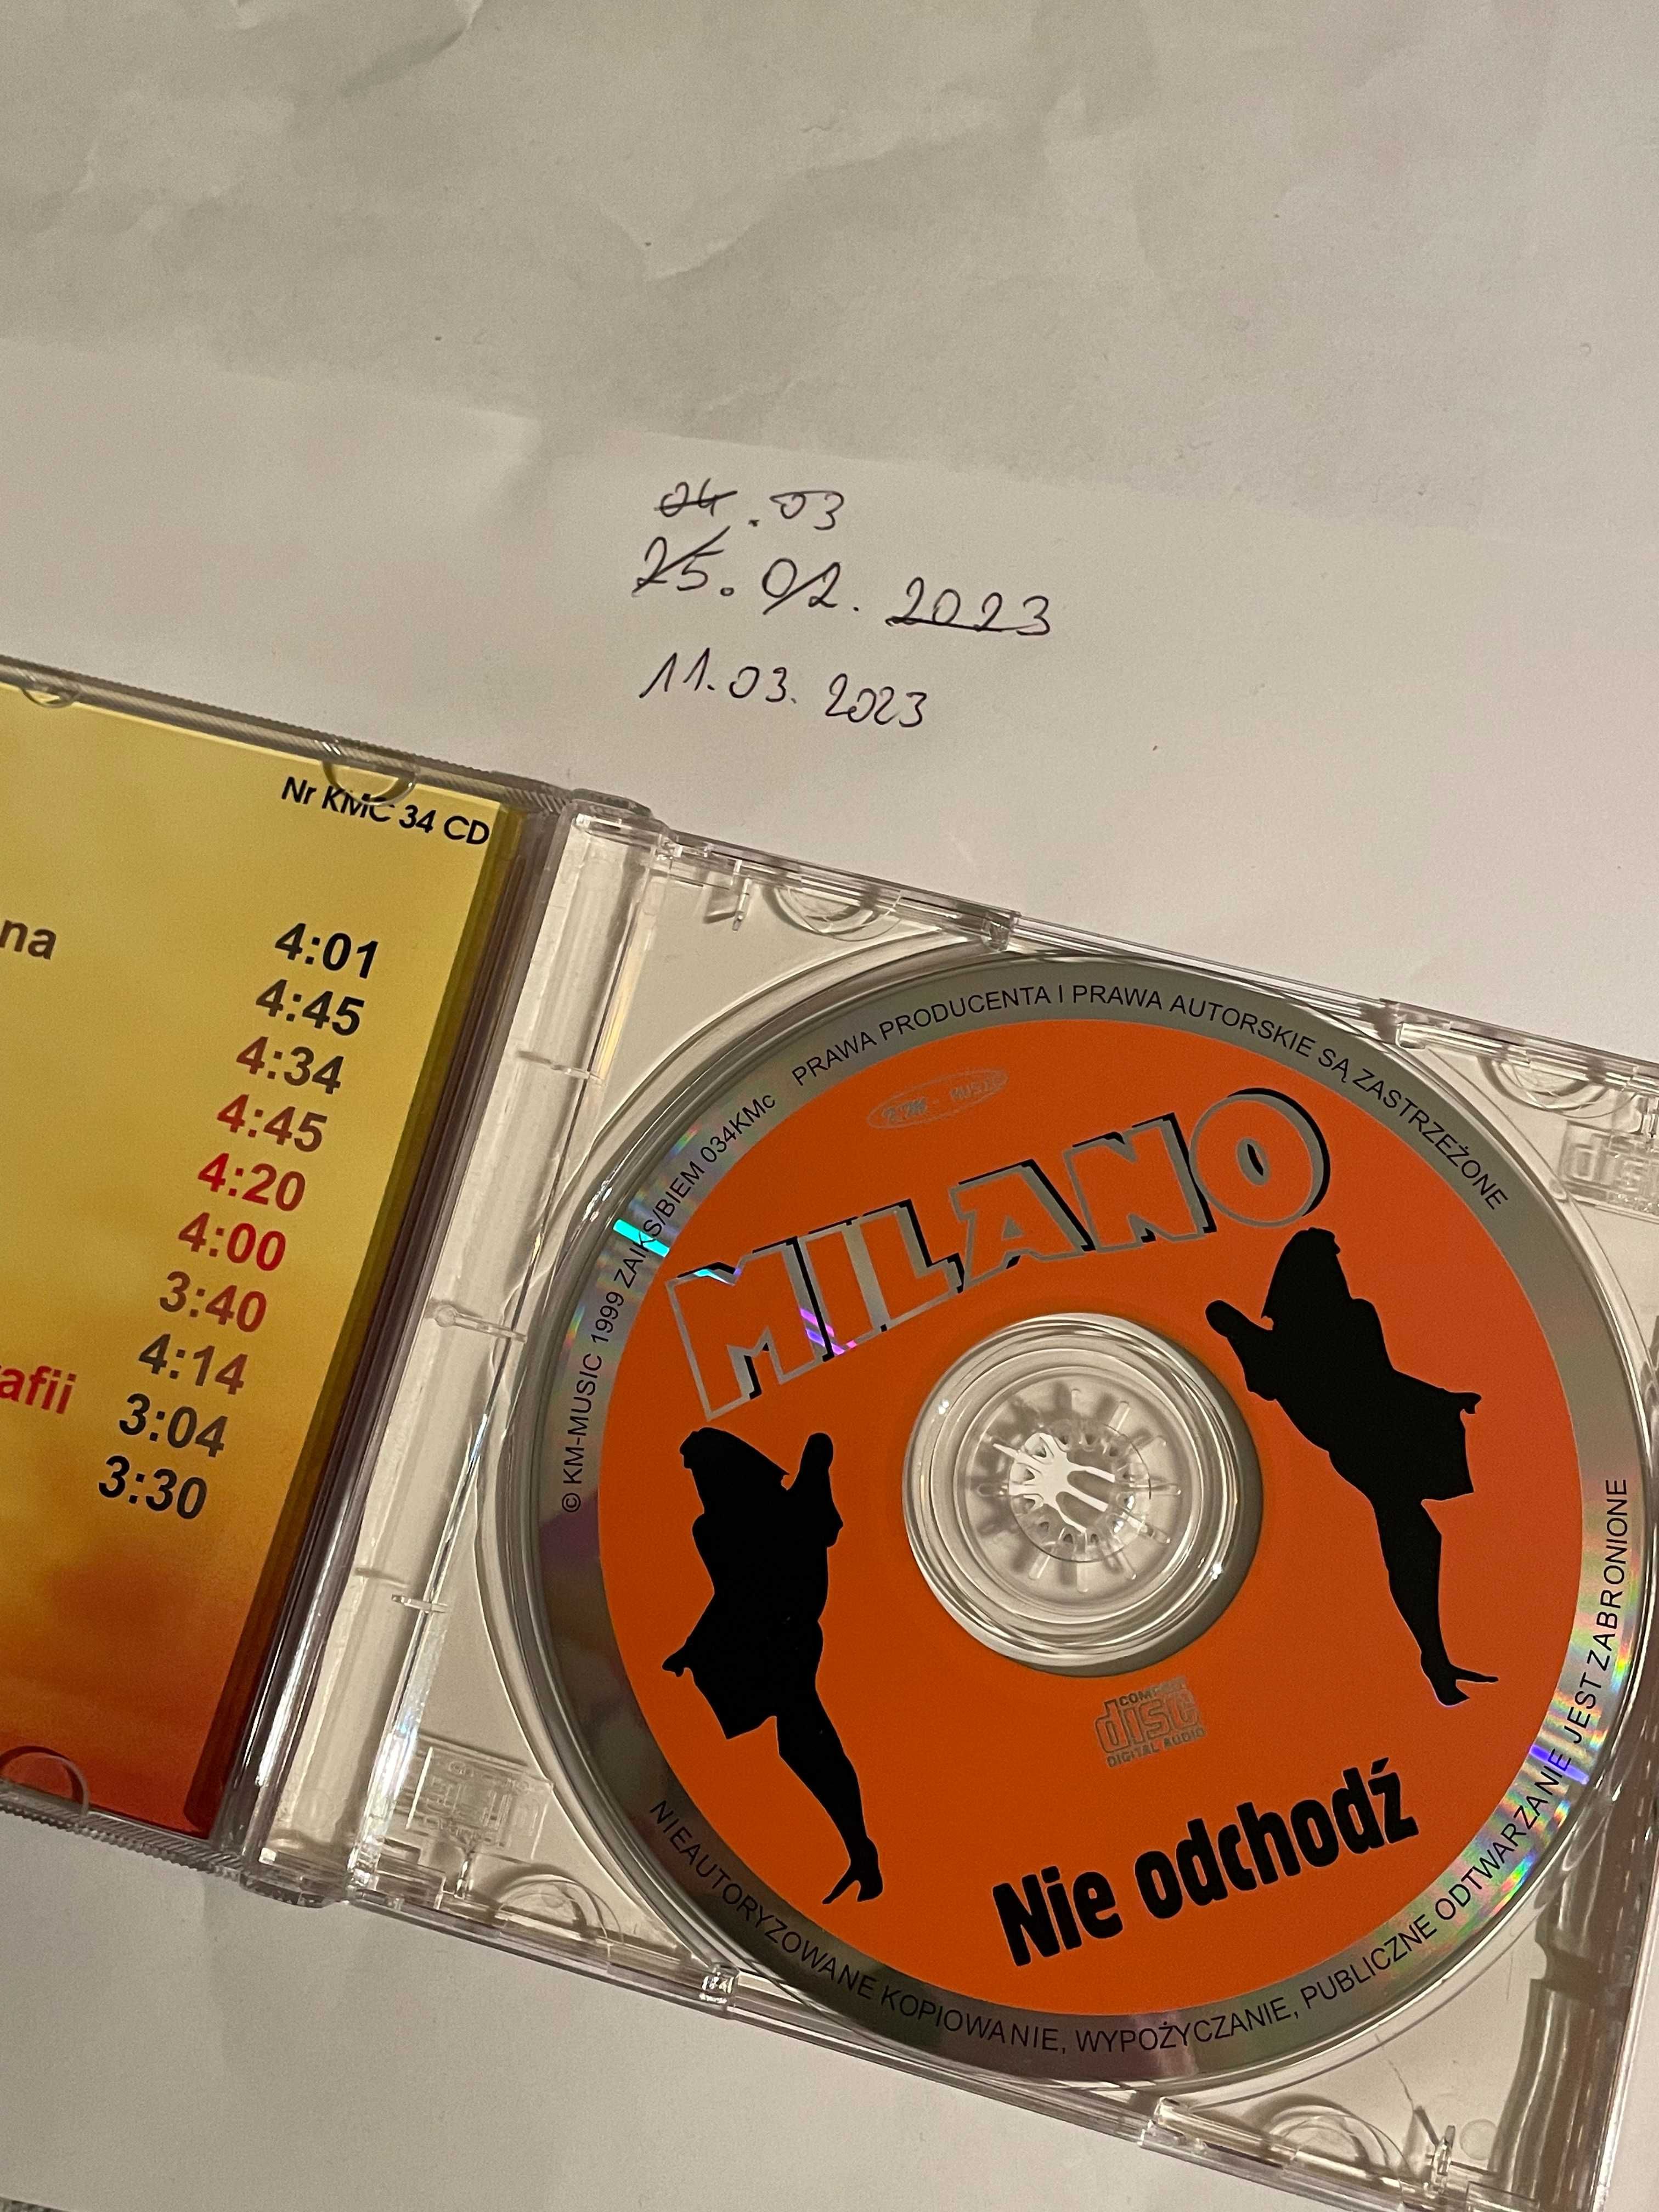 Milano - nie odchodź - CD - unikat - KM Music